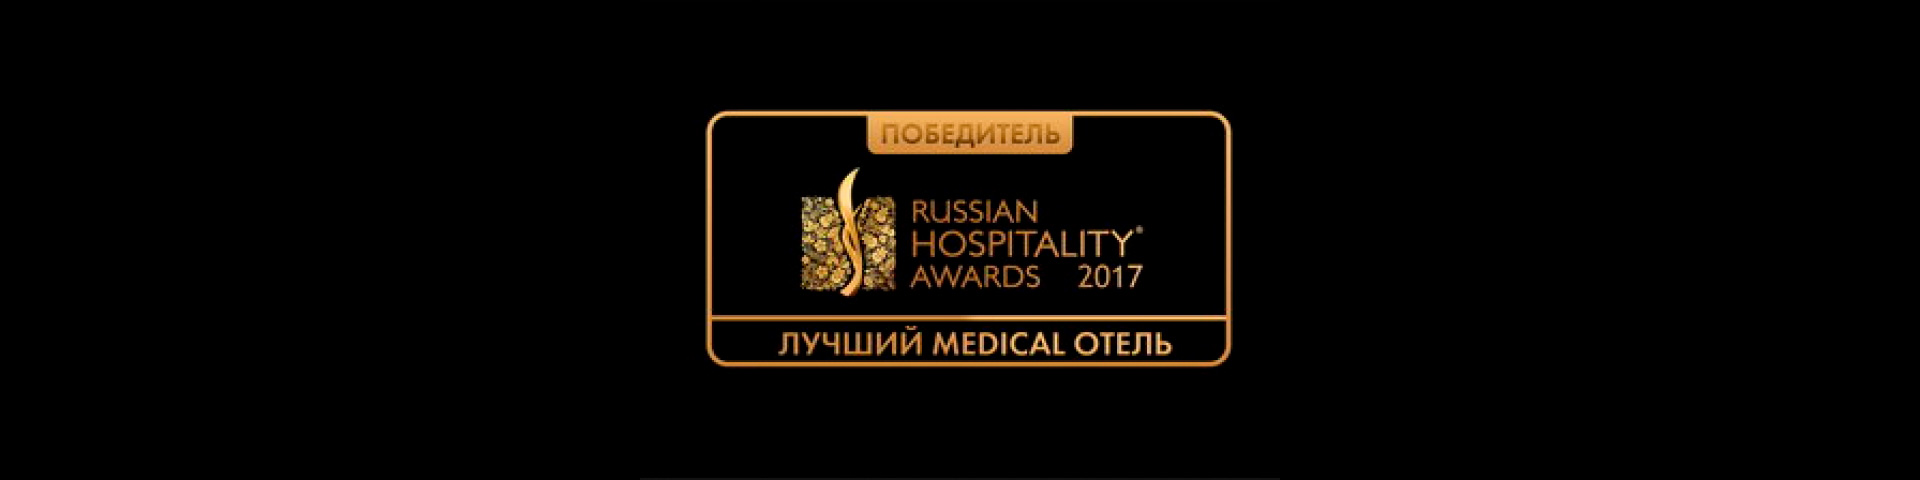 Лучший Medical hotel 2017 по версии Russian Hospitality Awards